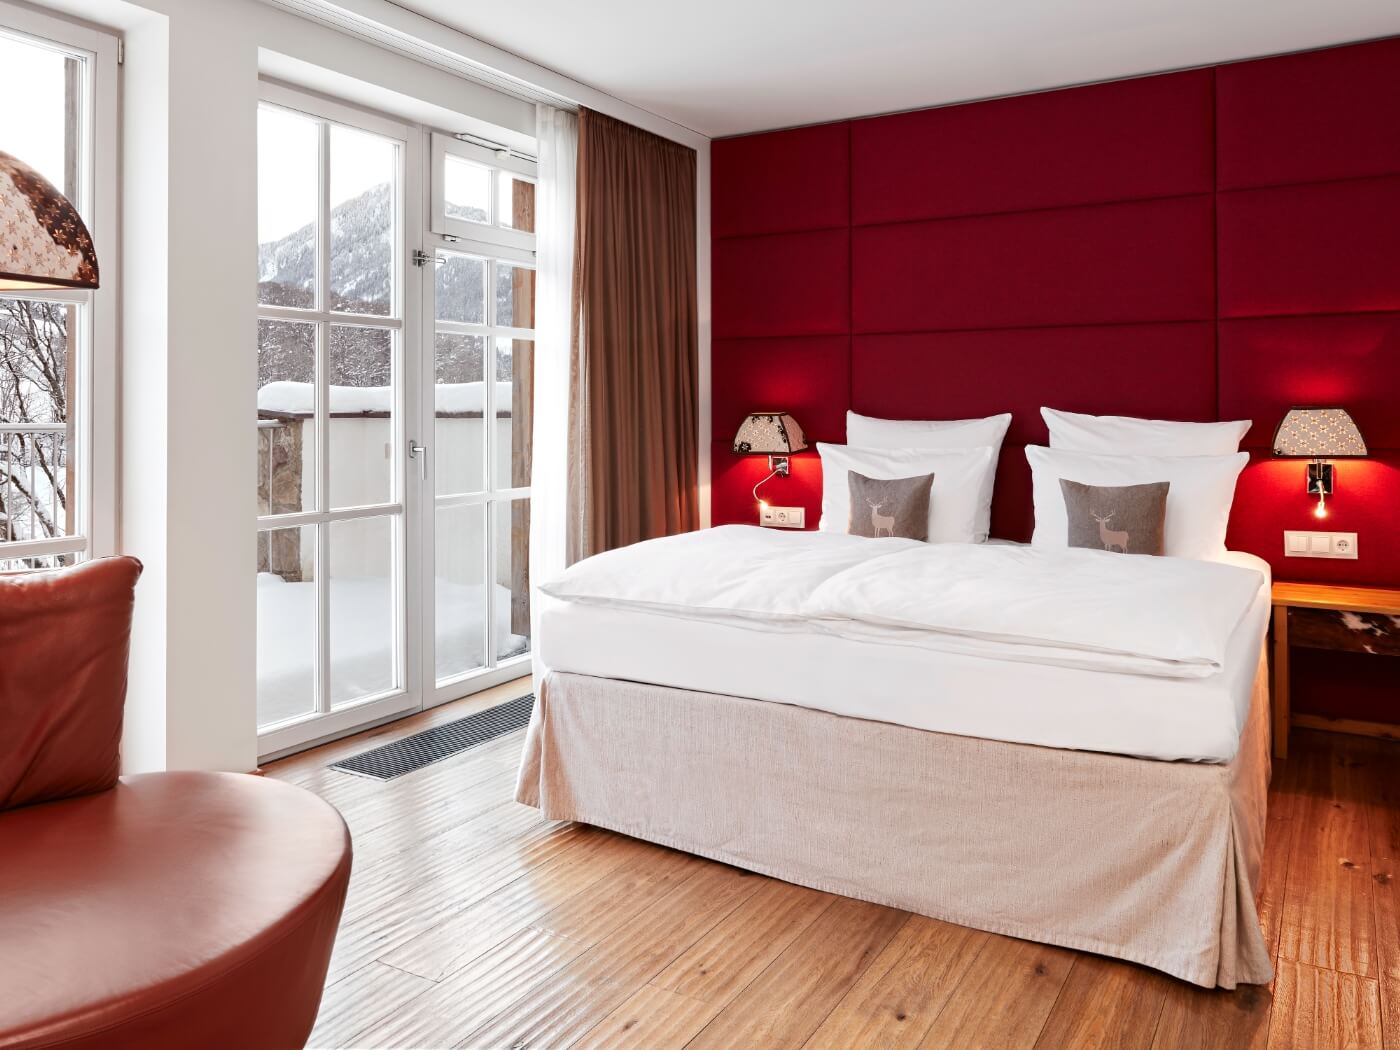 Ein einladendes Bett vor einer roten Wand